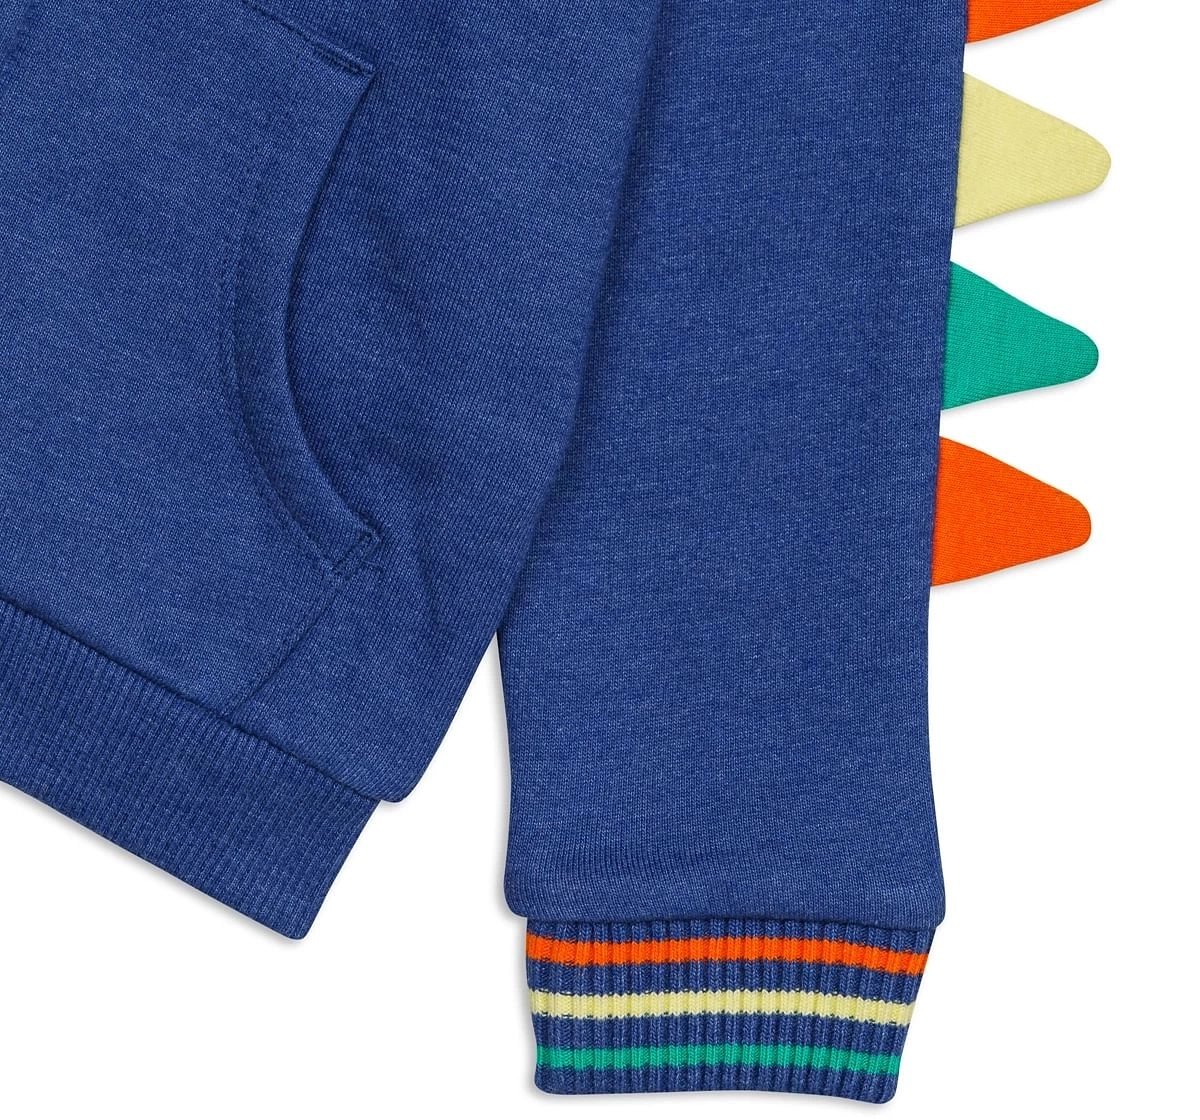 H by Hamleys Boys Full Sleeves sweatshirts -Pack of 1-Blue